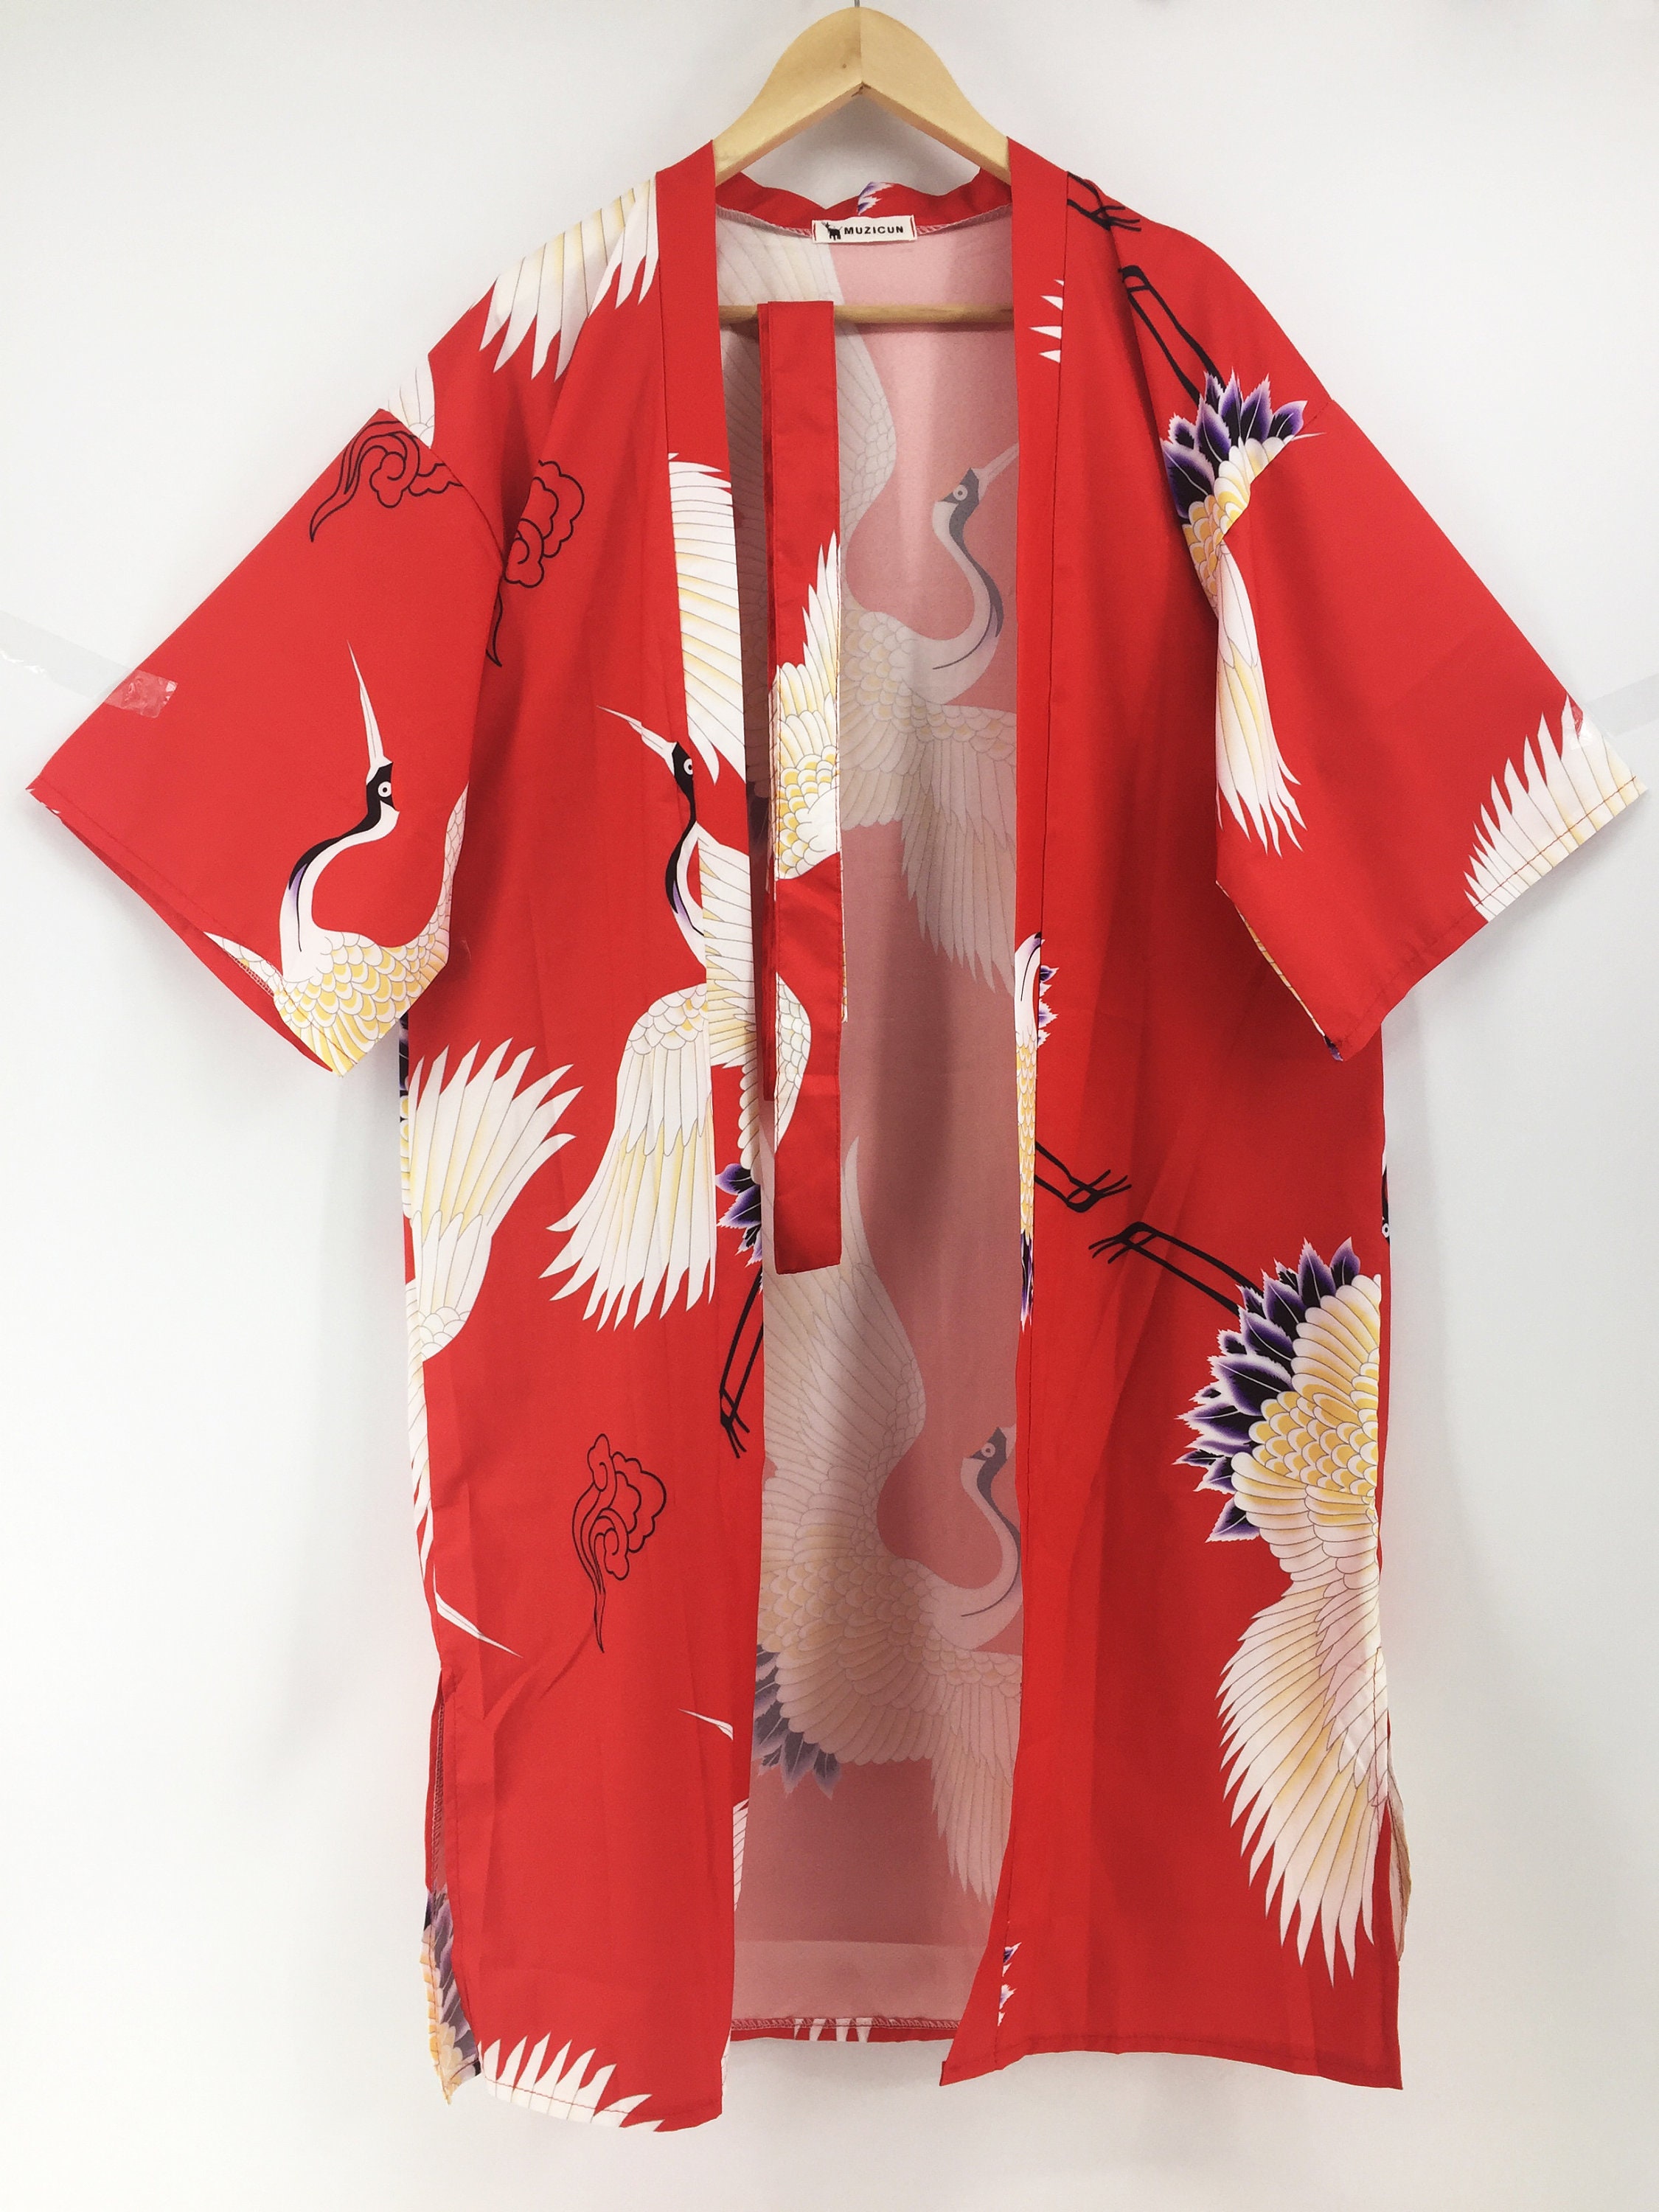 Kimono / Japanese Clothing /kimono Robe / Japanese Kimono / - Etsy